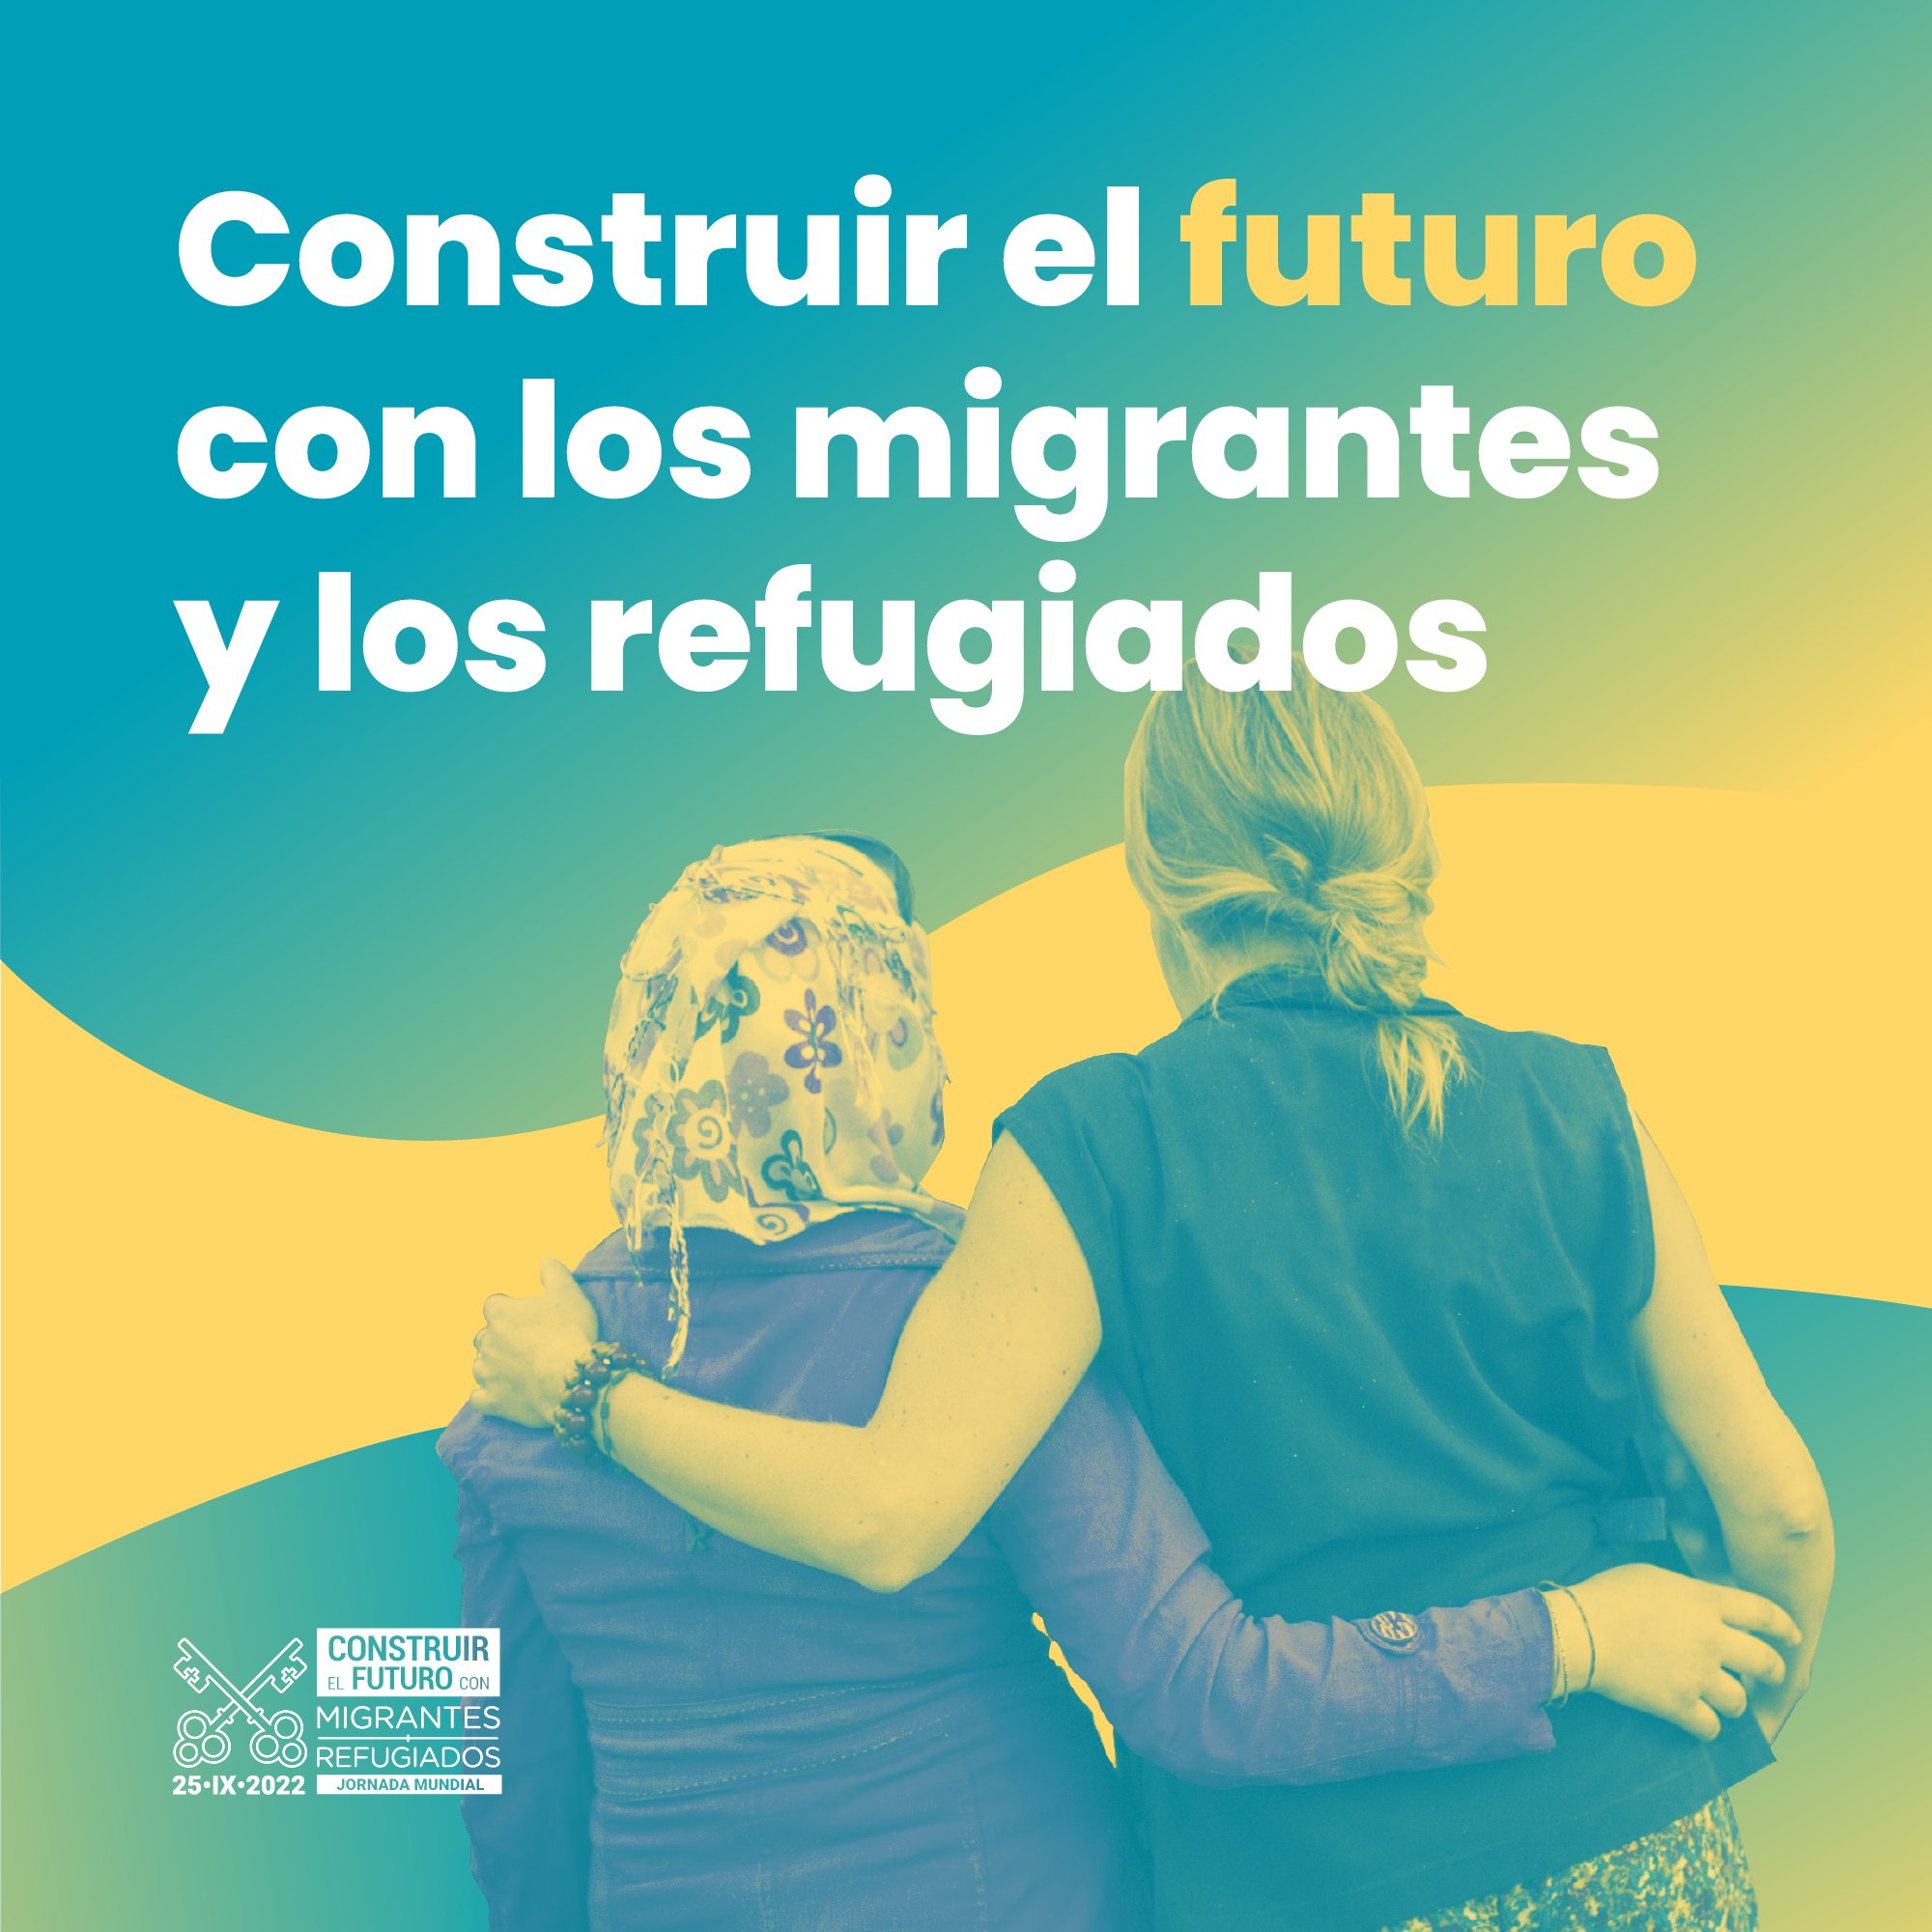 Jornada Munidal del Migrante y del Refugiado 2002. Construir el futuro con los migrantes y refugiados. Cartel 1.